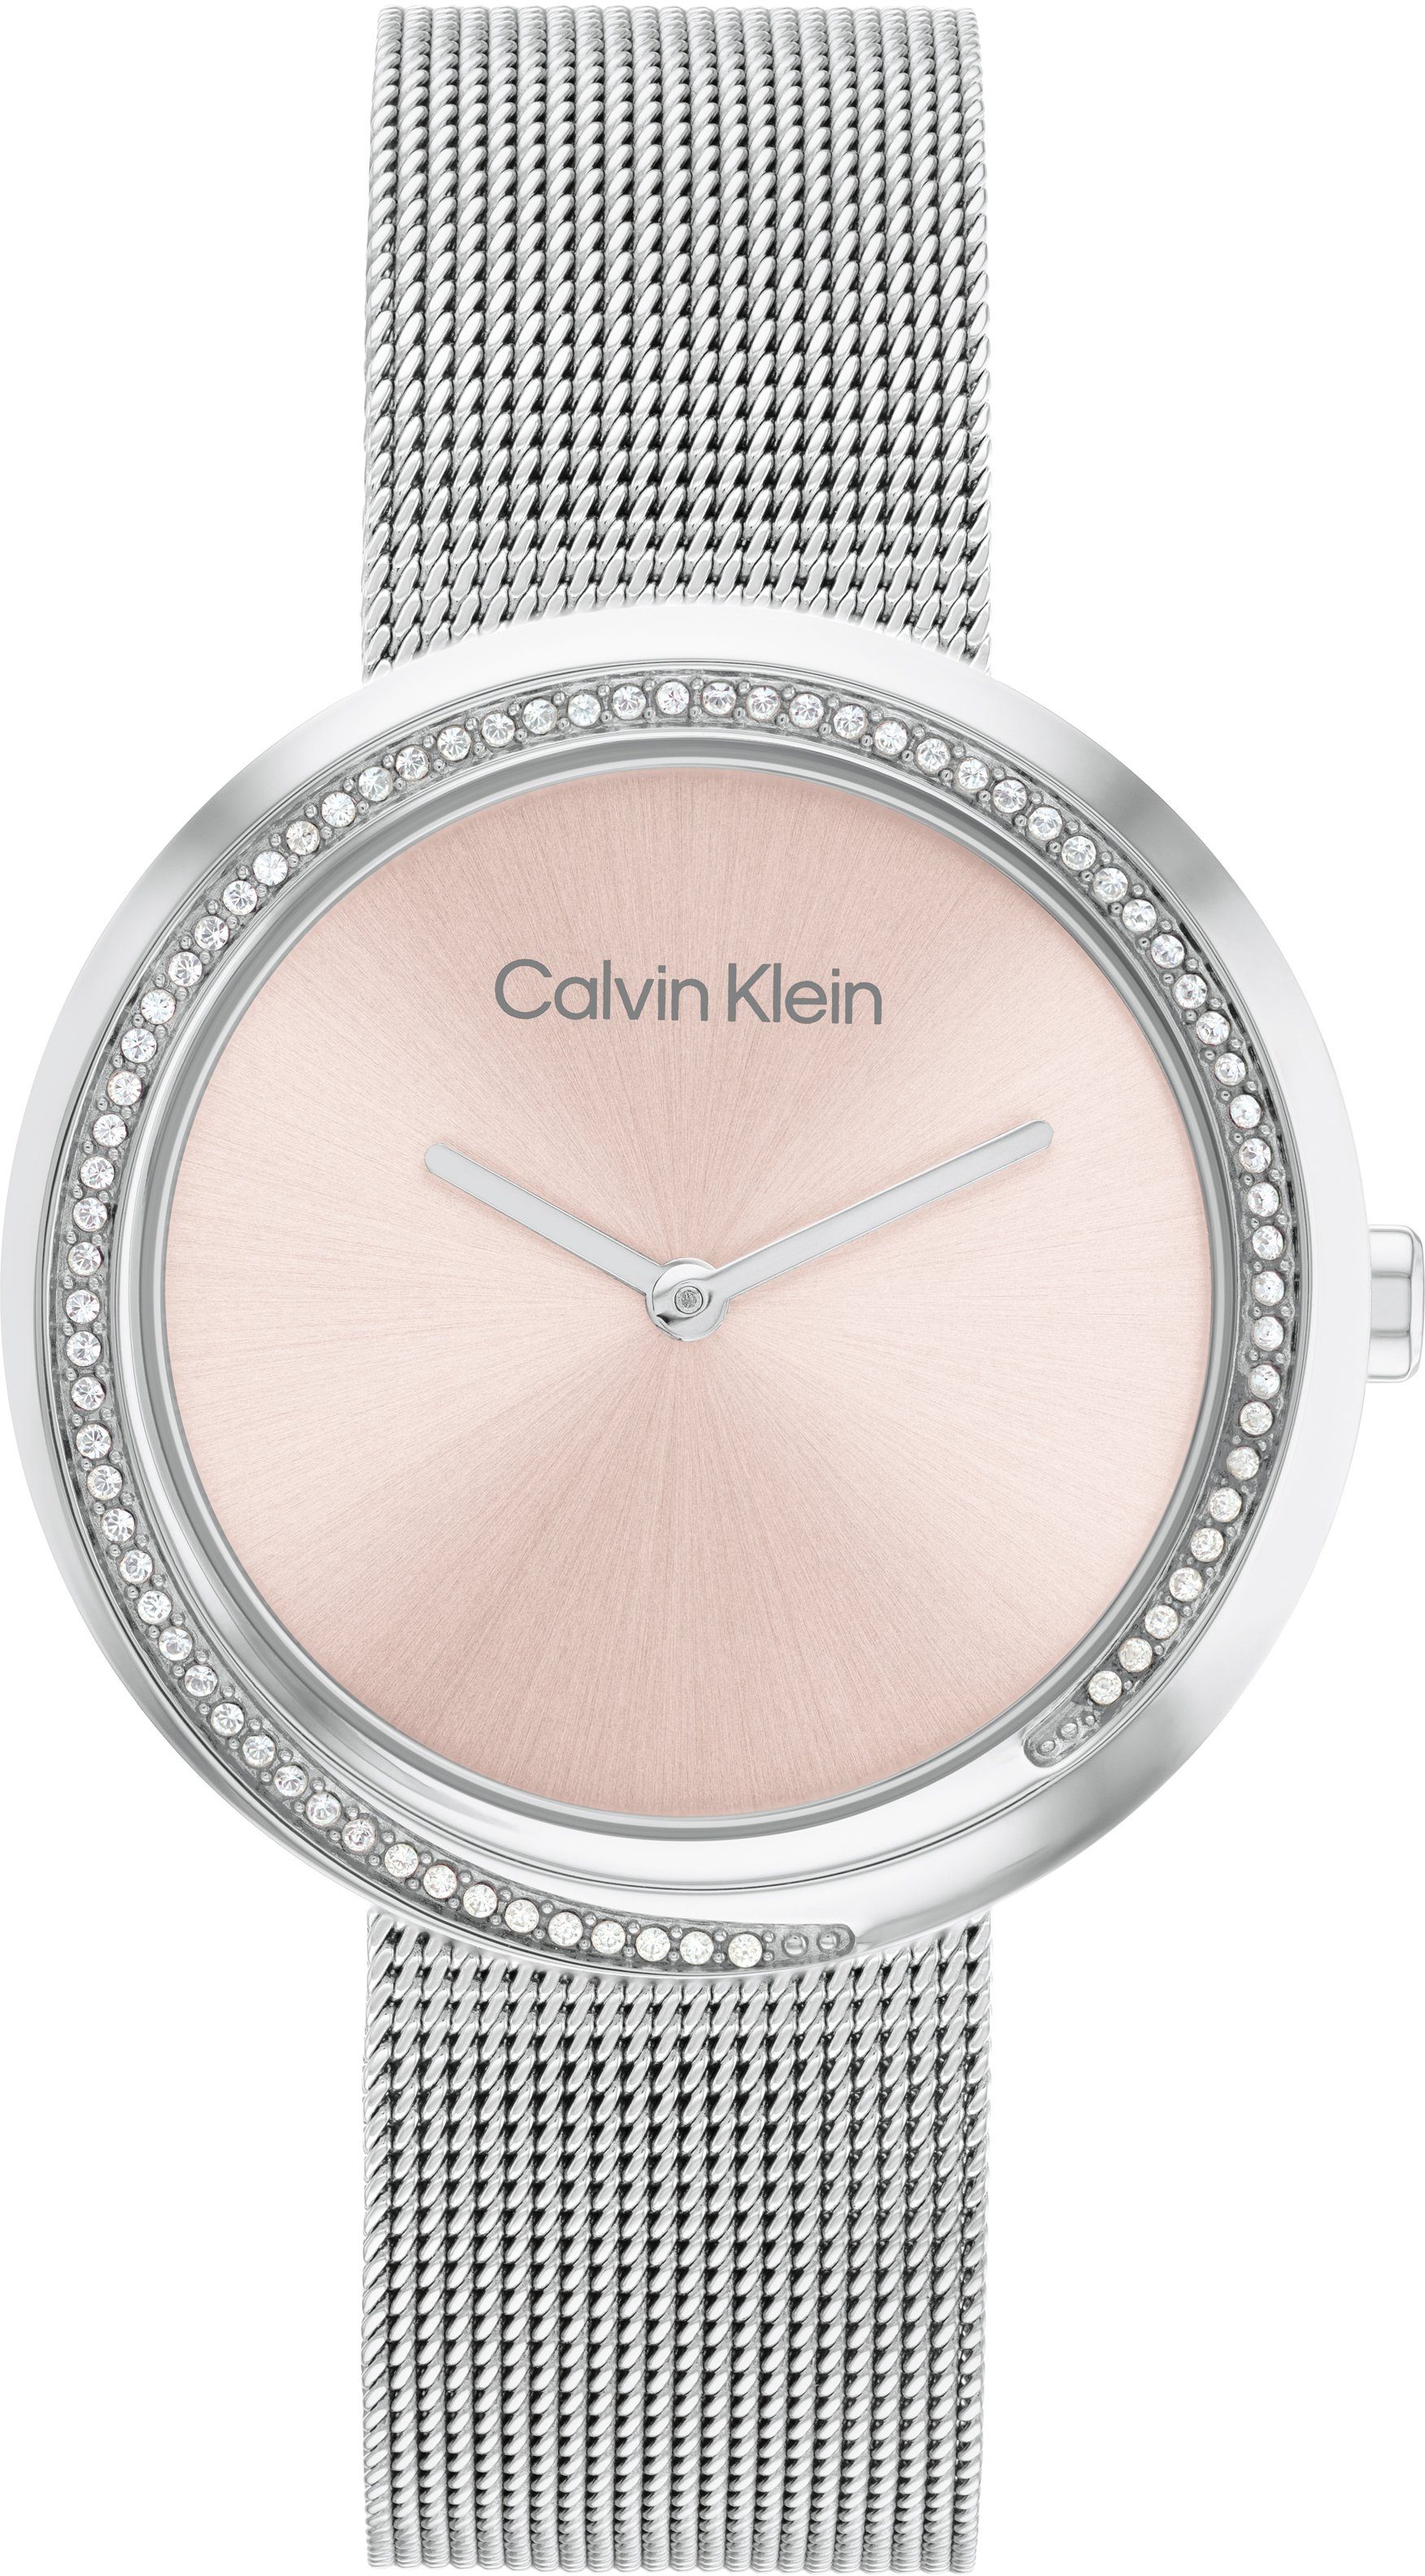 Calvin Klein Quarzuhr TWISTED BEZEL, 25200149, Armbanduhr, Damenuhr, Mineralglas, Glaskristalle